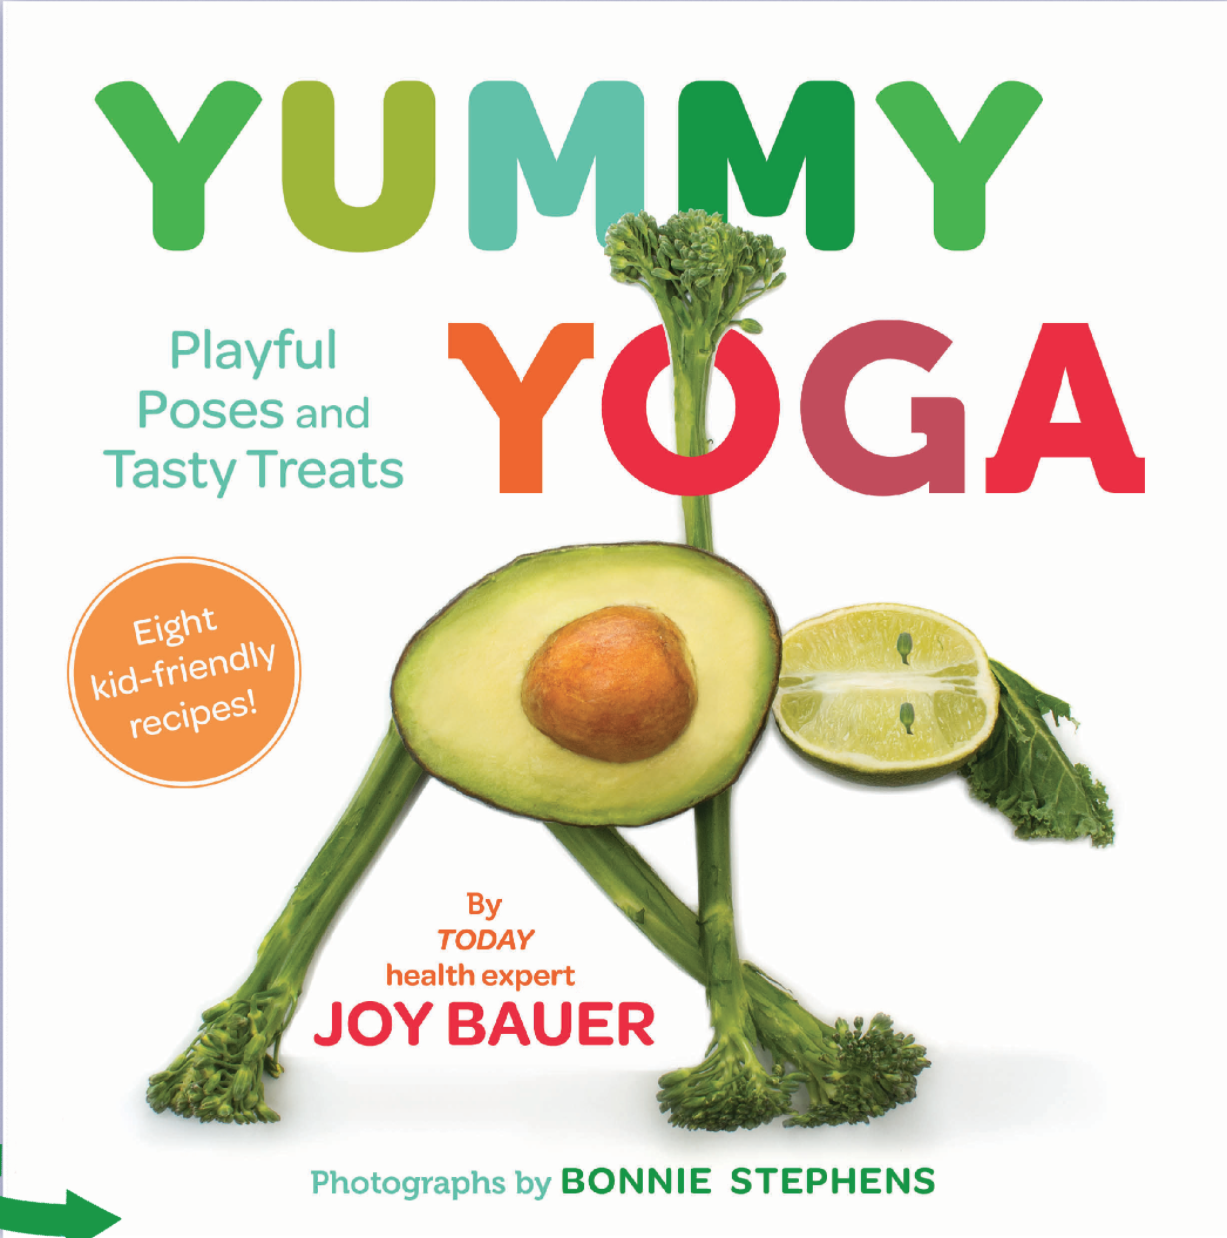 JOY BAUER’S New Book Yummy Yoga!